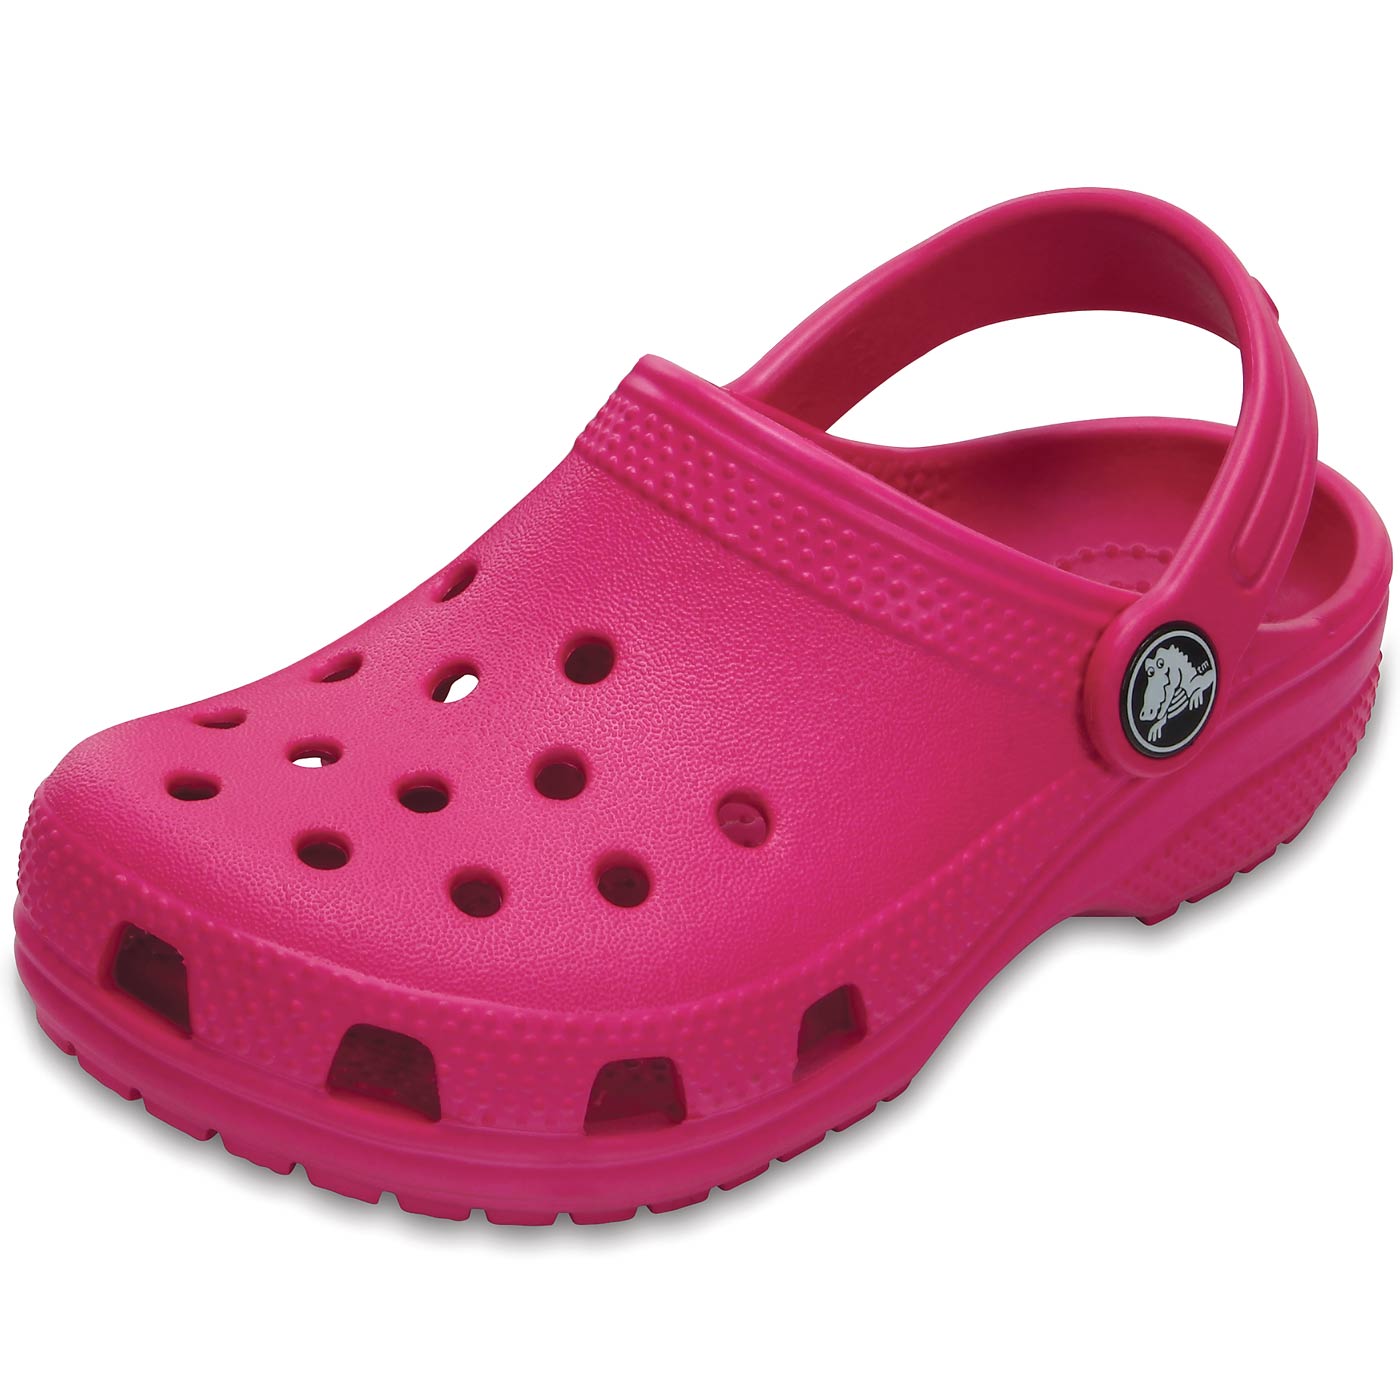 crocs classic clog pink